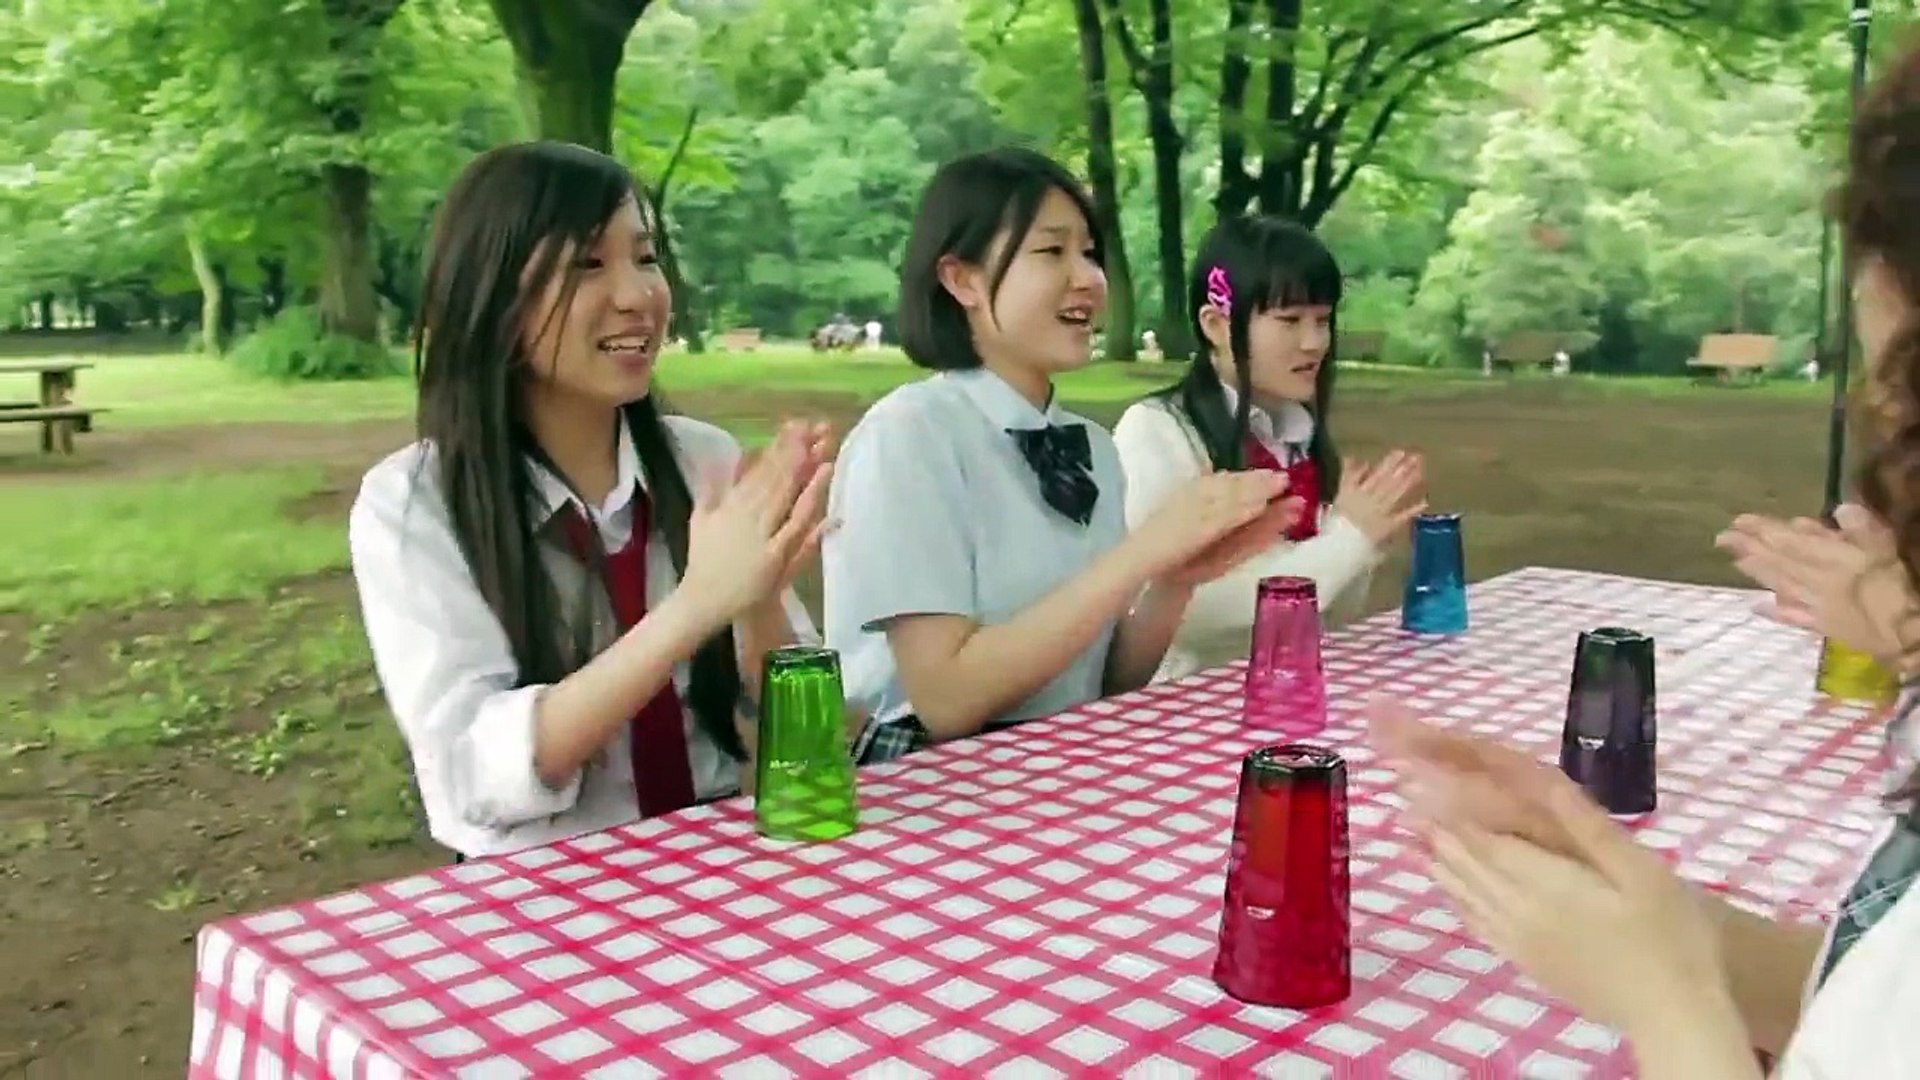 注目 女子中高生ボーカルユニット Little Glee Monster がポコポコしてみた Cups カップソング Video Dailymotion